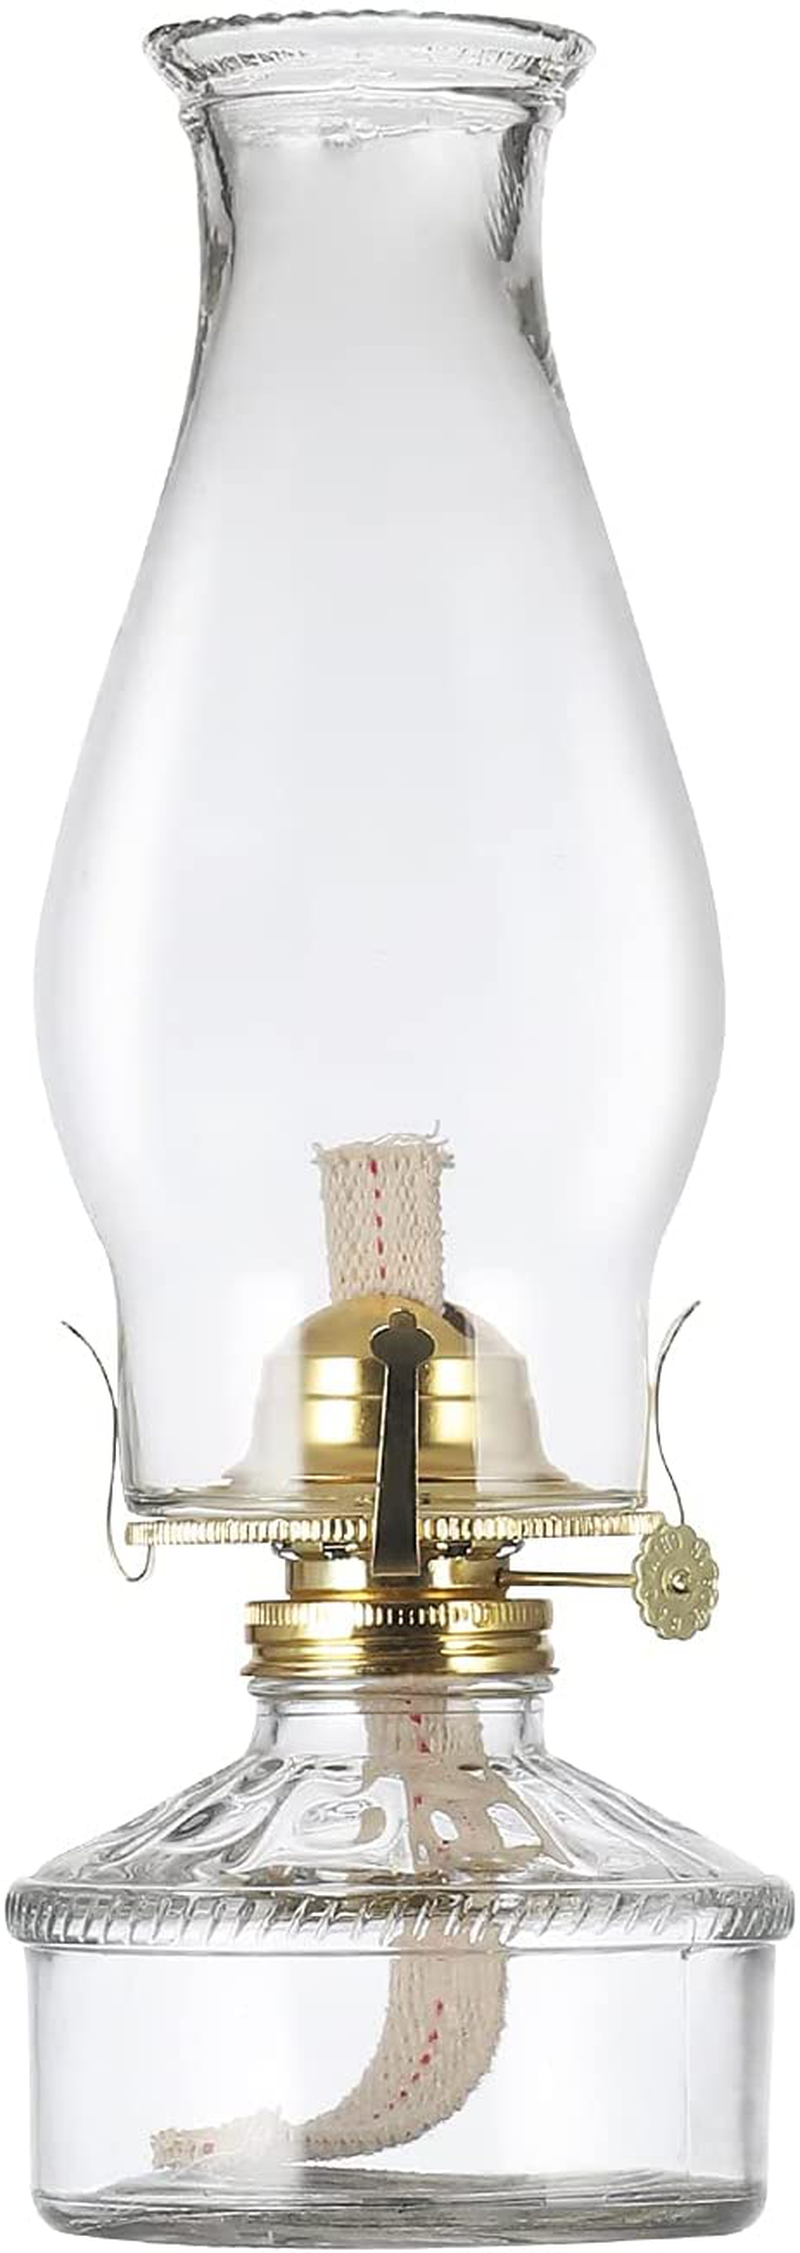 Rustic Oil Lamp Lantern Vintage Glass Kerosene Lamp 12.5''Chamber Oil Lamps for Indoor Use Home Decor Lighting Oil Lantern Home & Garden > Lighting Accessories > Oil Lamp Fuel DNRVK Large  